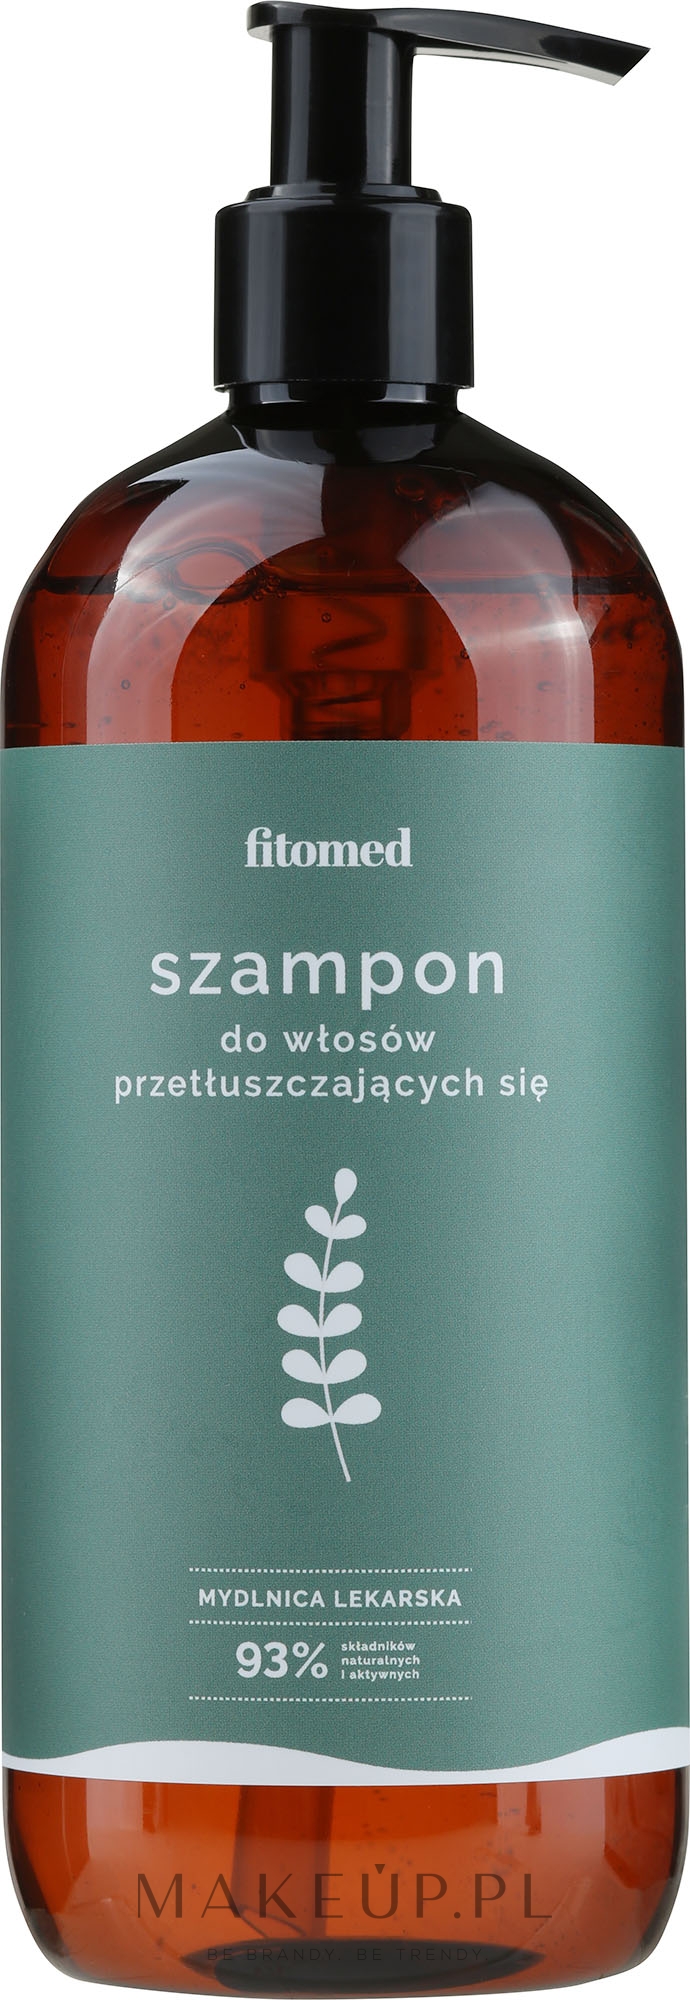 fitomed szampon z mydlnicy